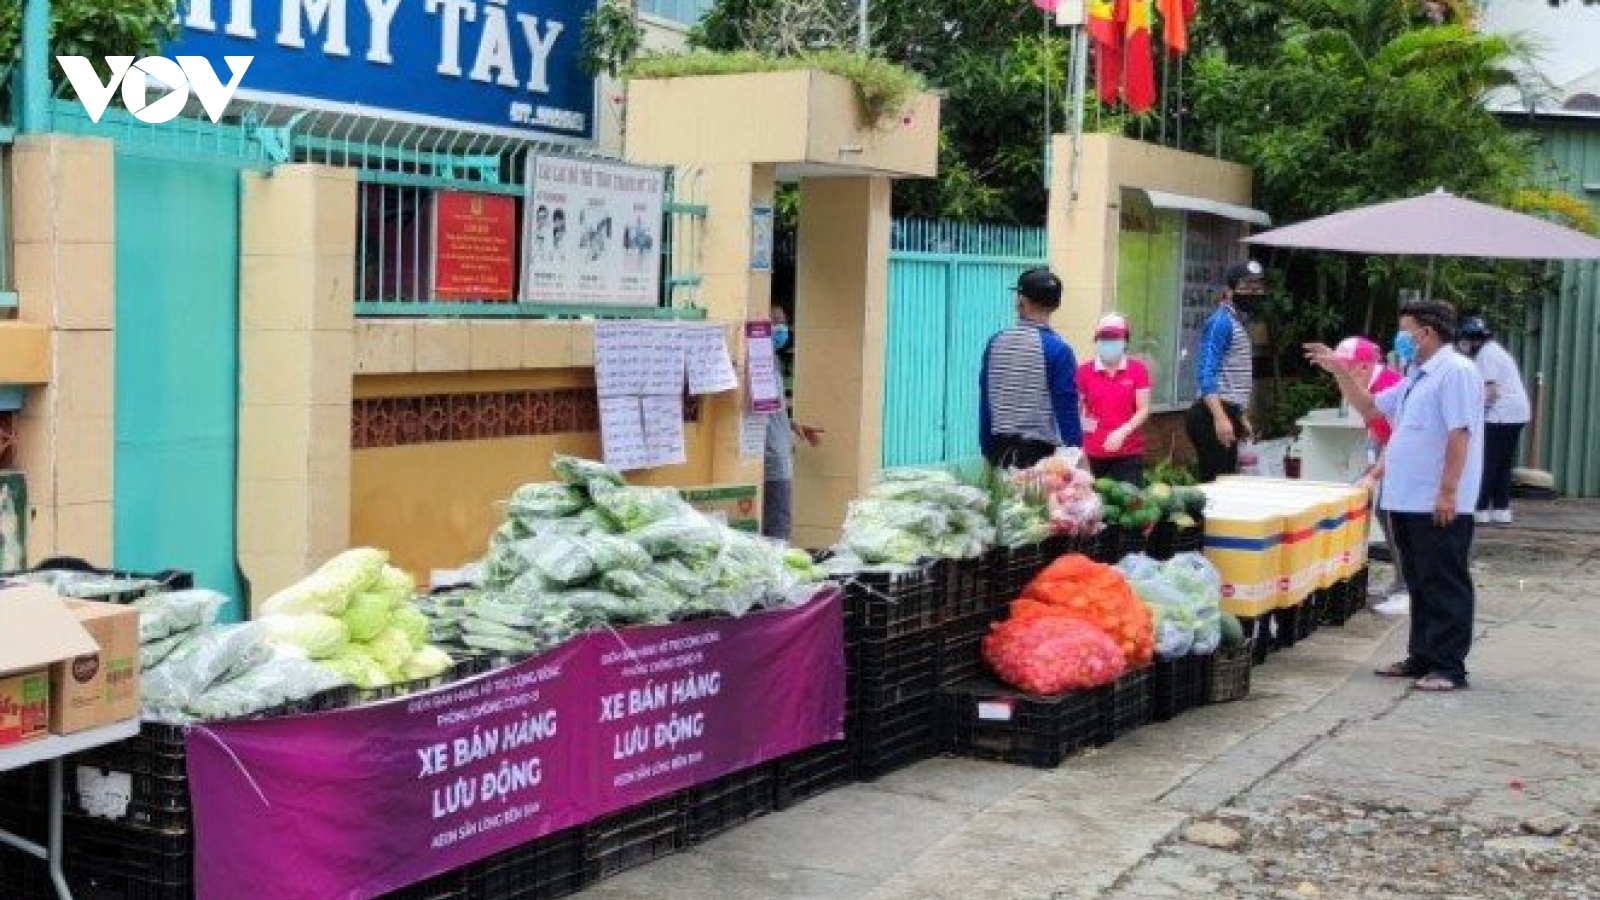 TP.HCM mở thêm điểm bán hàng lưu động cung cấp thực phẩm cho người dân